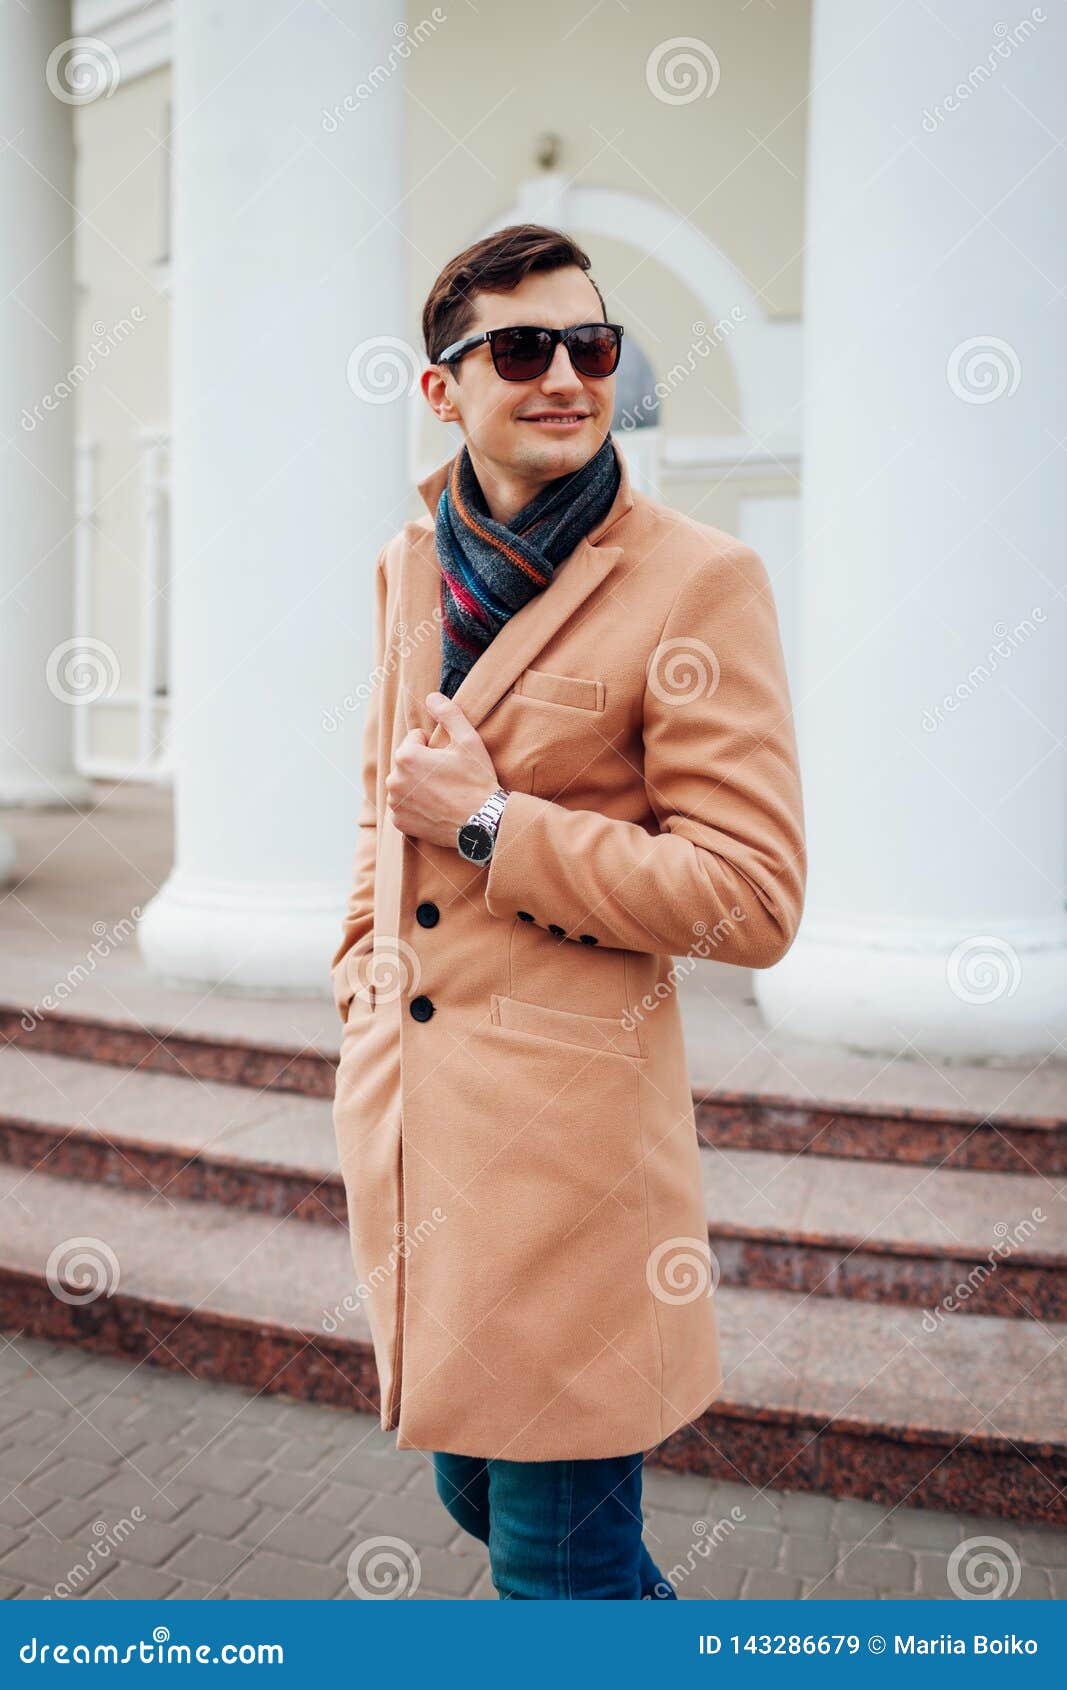 Hombre Elegante Que Camina Ciudad Individuo Hermoso Que Lleva La Ropa Y Los Accesorios Clásicos Moda De La Calle Imagen archivo - Imagen de confidente, 143286679